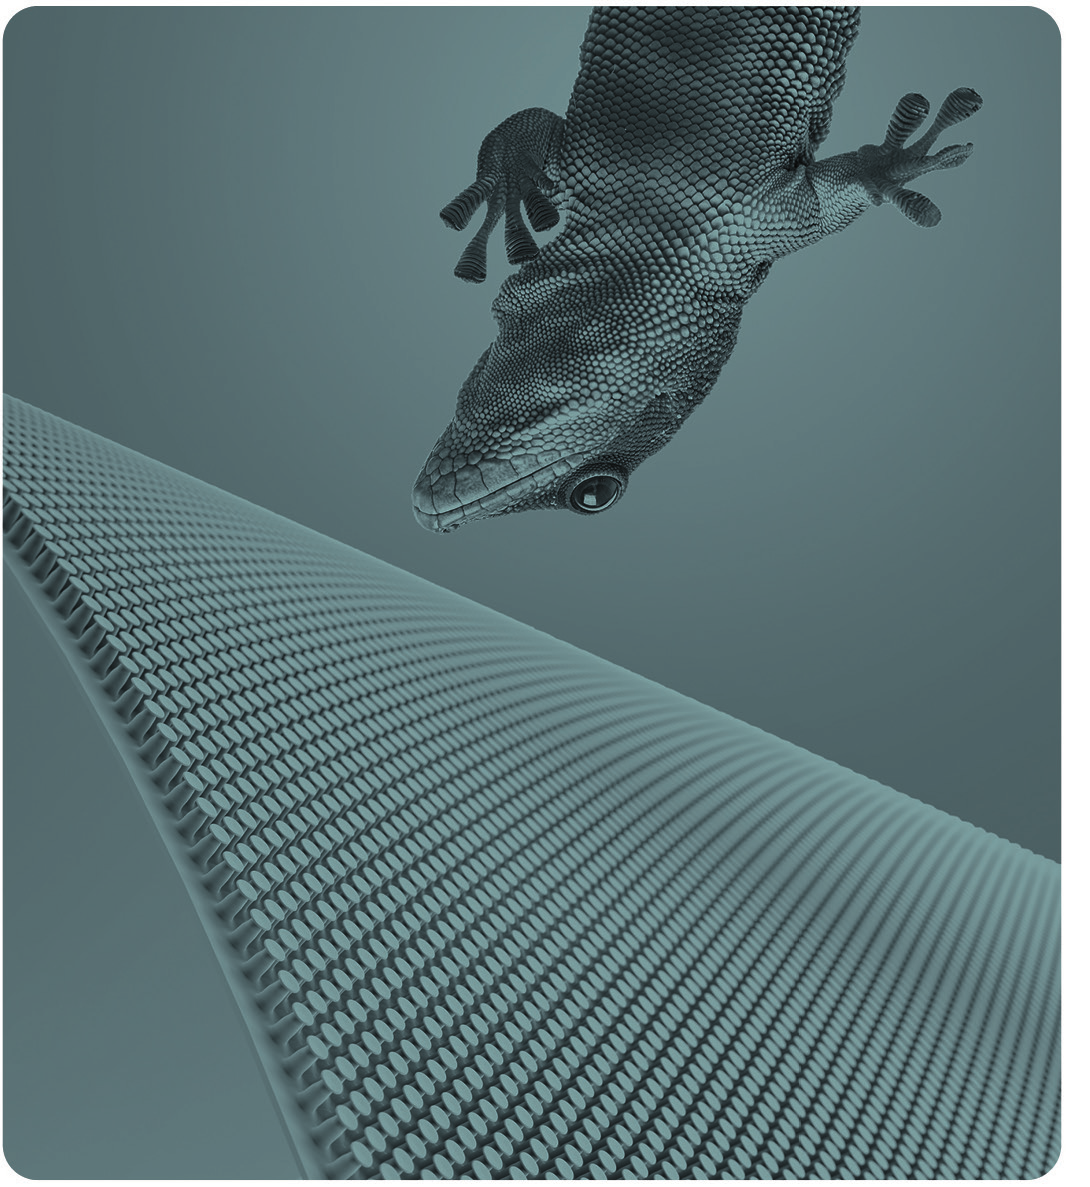 Vorbild Gecko: Binder hat eine klebstofffreie, mikrostrukturierte Silikonfolie mit ca. 29.000 Haftelementen pro Quadratzentimeter entwickelt